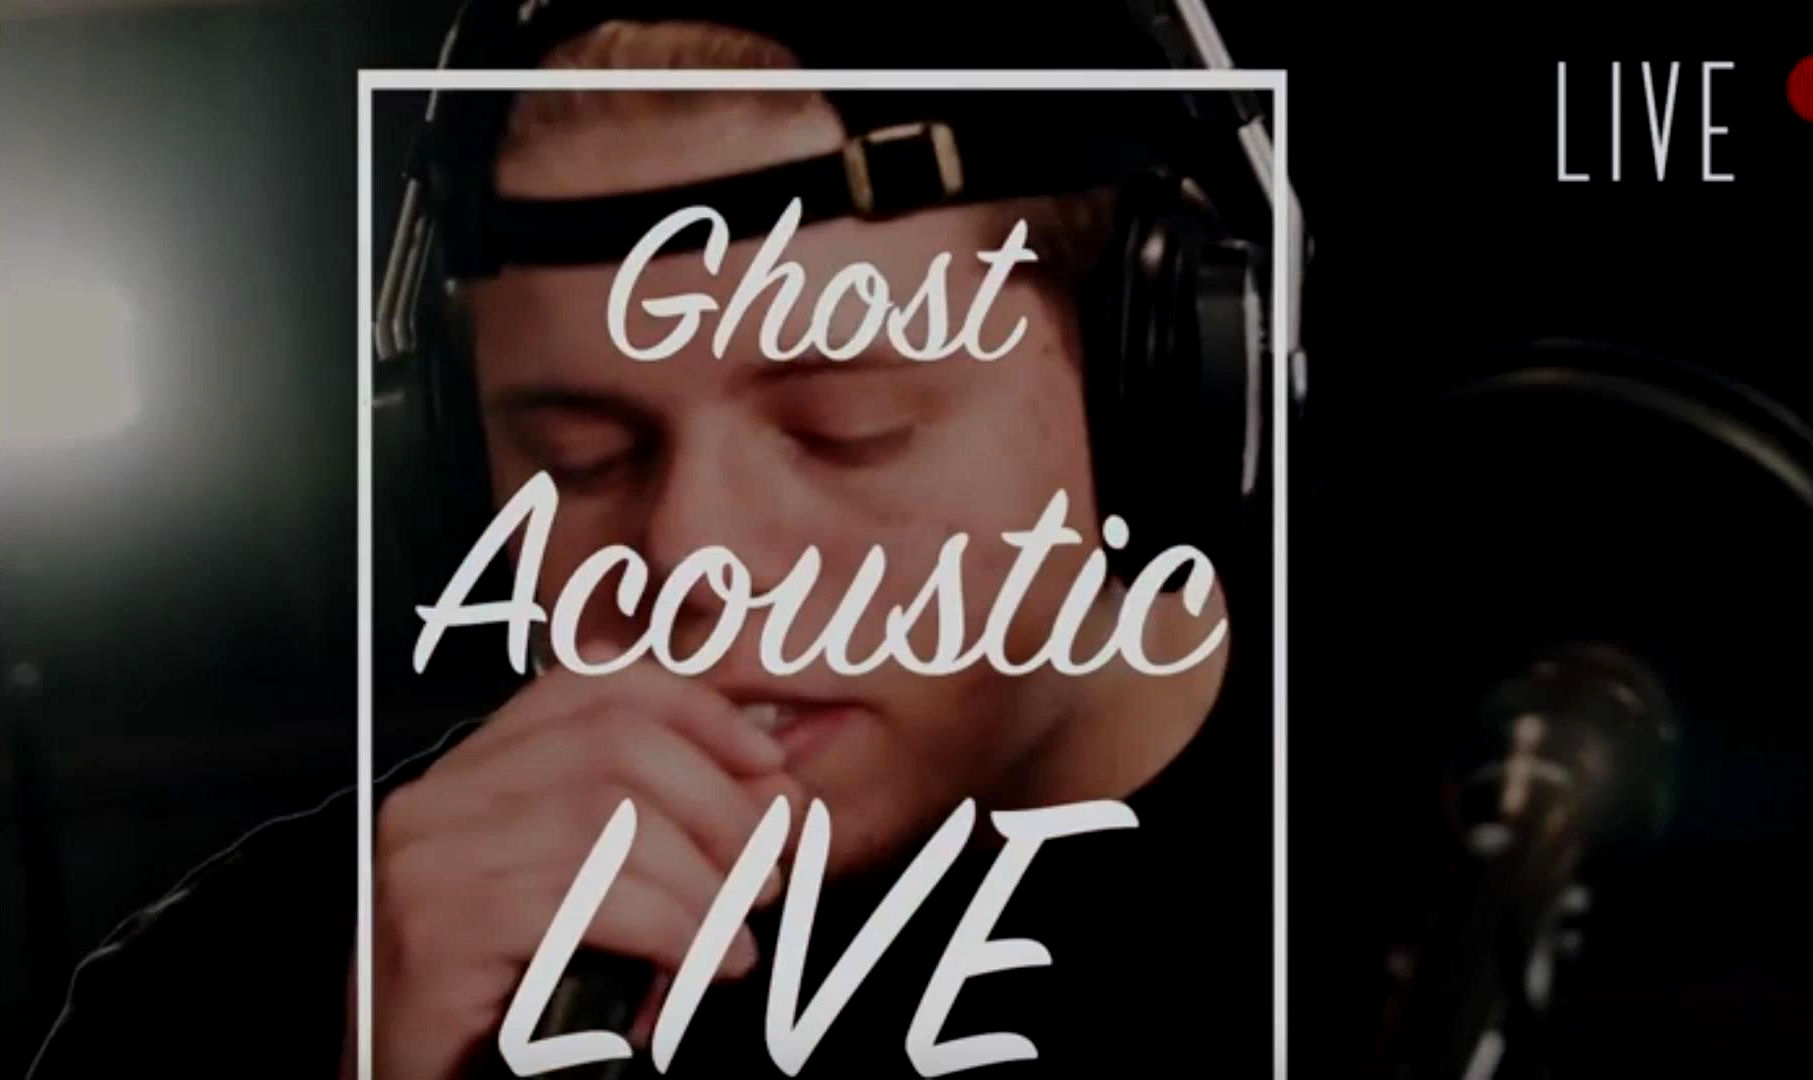  Tom Adams – “Ghost (Acoustic)”